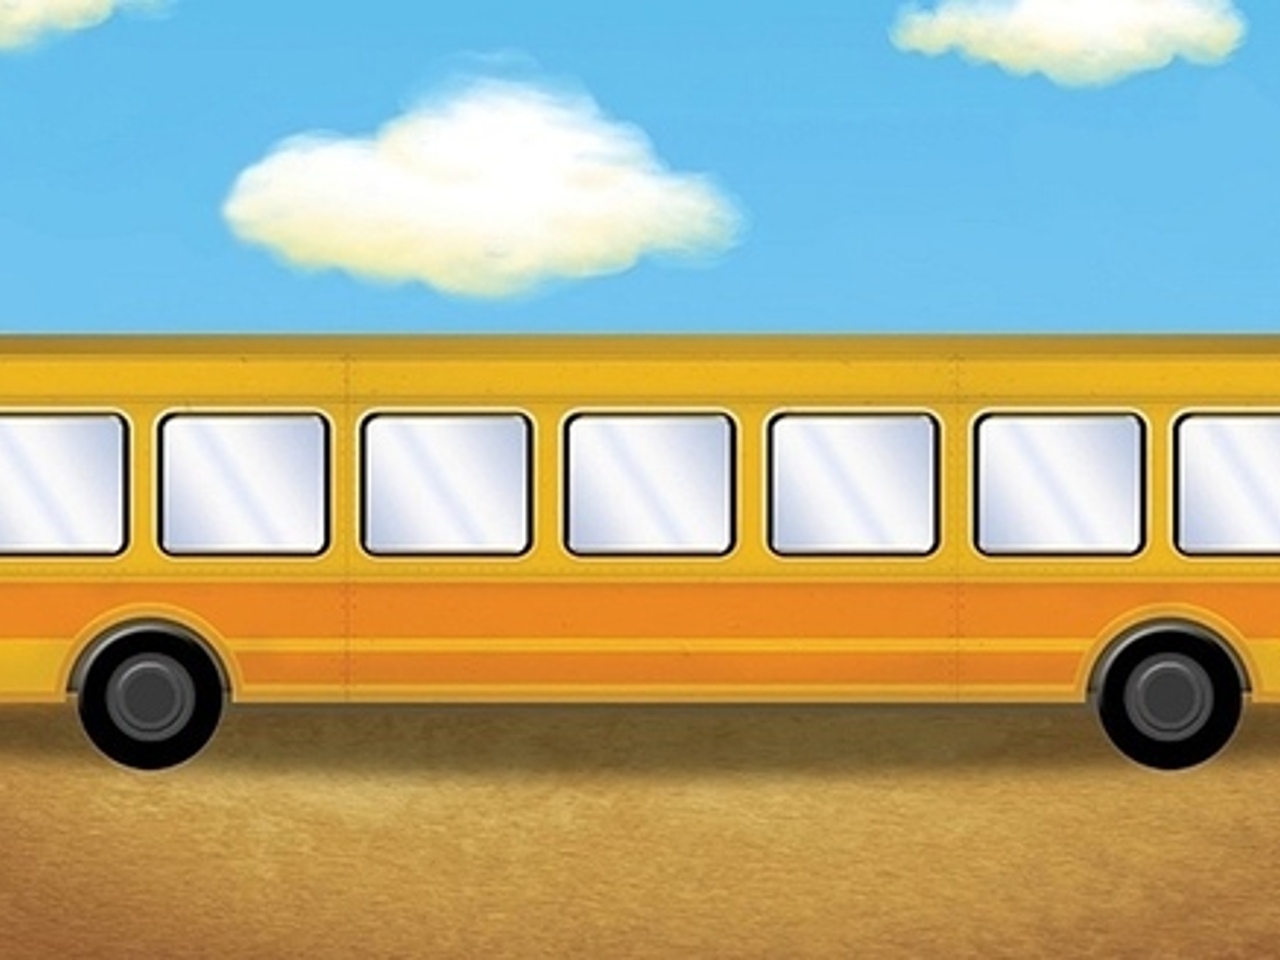 Картинка едет автобус. В какую сторону едет автобус. В какую сторону едет автобус ответ. Куда едет автобус загадка ответ. Загадка в какую сторону едет автобус картинка ответ.